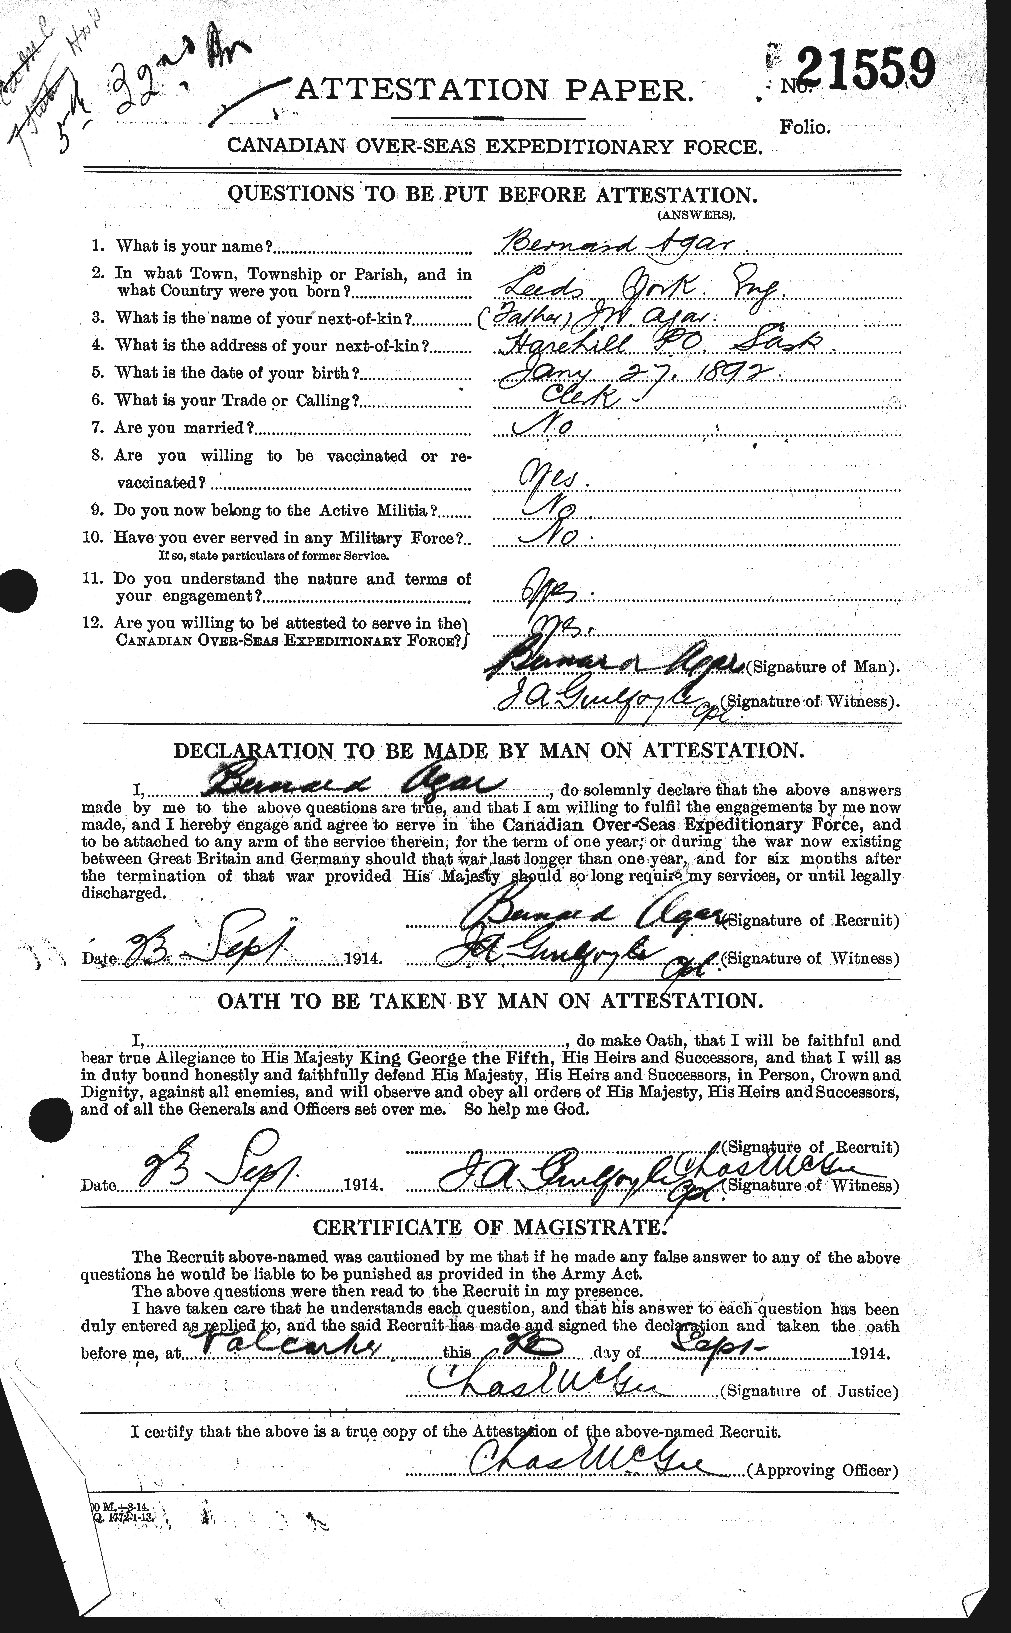 Dossiers du Personnel de la Première Guerre mondiale - CEC 203661a